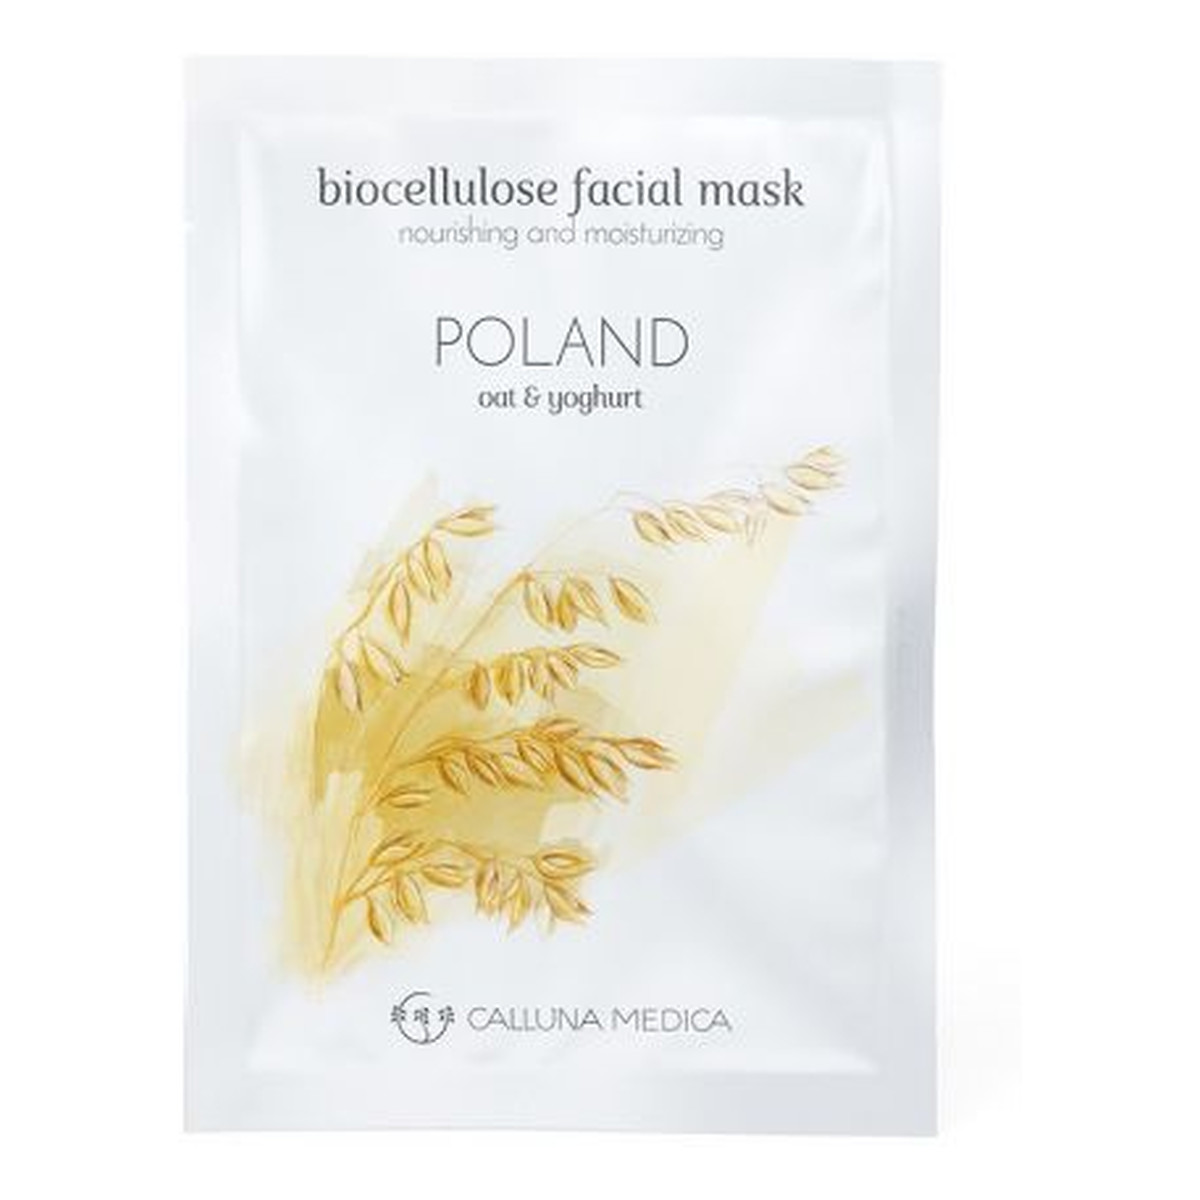 Calluna Medica Poland Nourishing & Moisturizing Biocellulose Facial Mask odżywczo-nawilżająca maseczka z biocelulozy Oat & Yoghurt 12ml